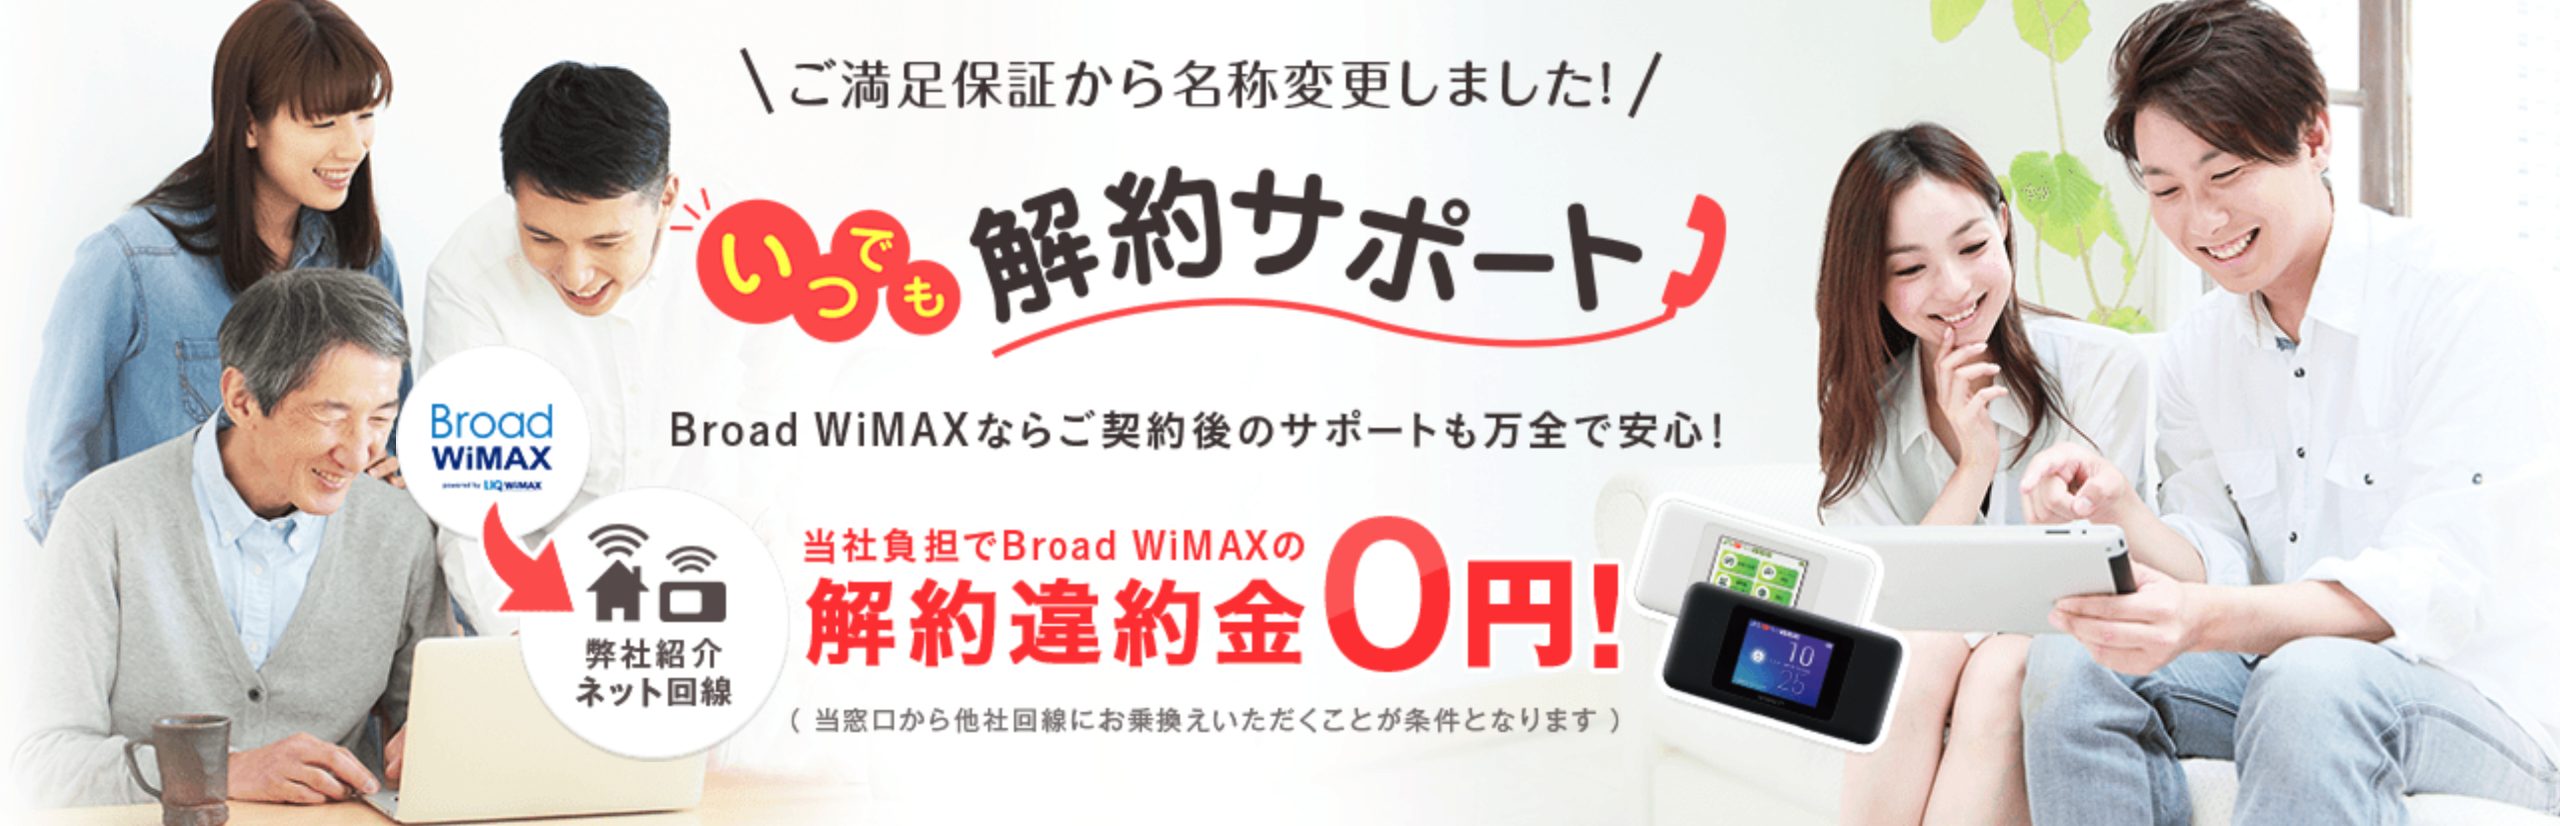 Broad WiMAXの特徴